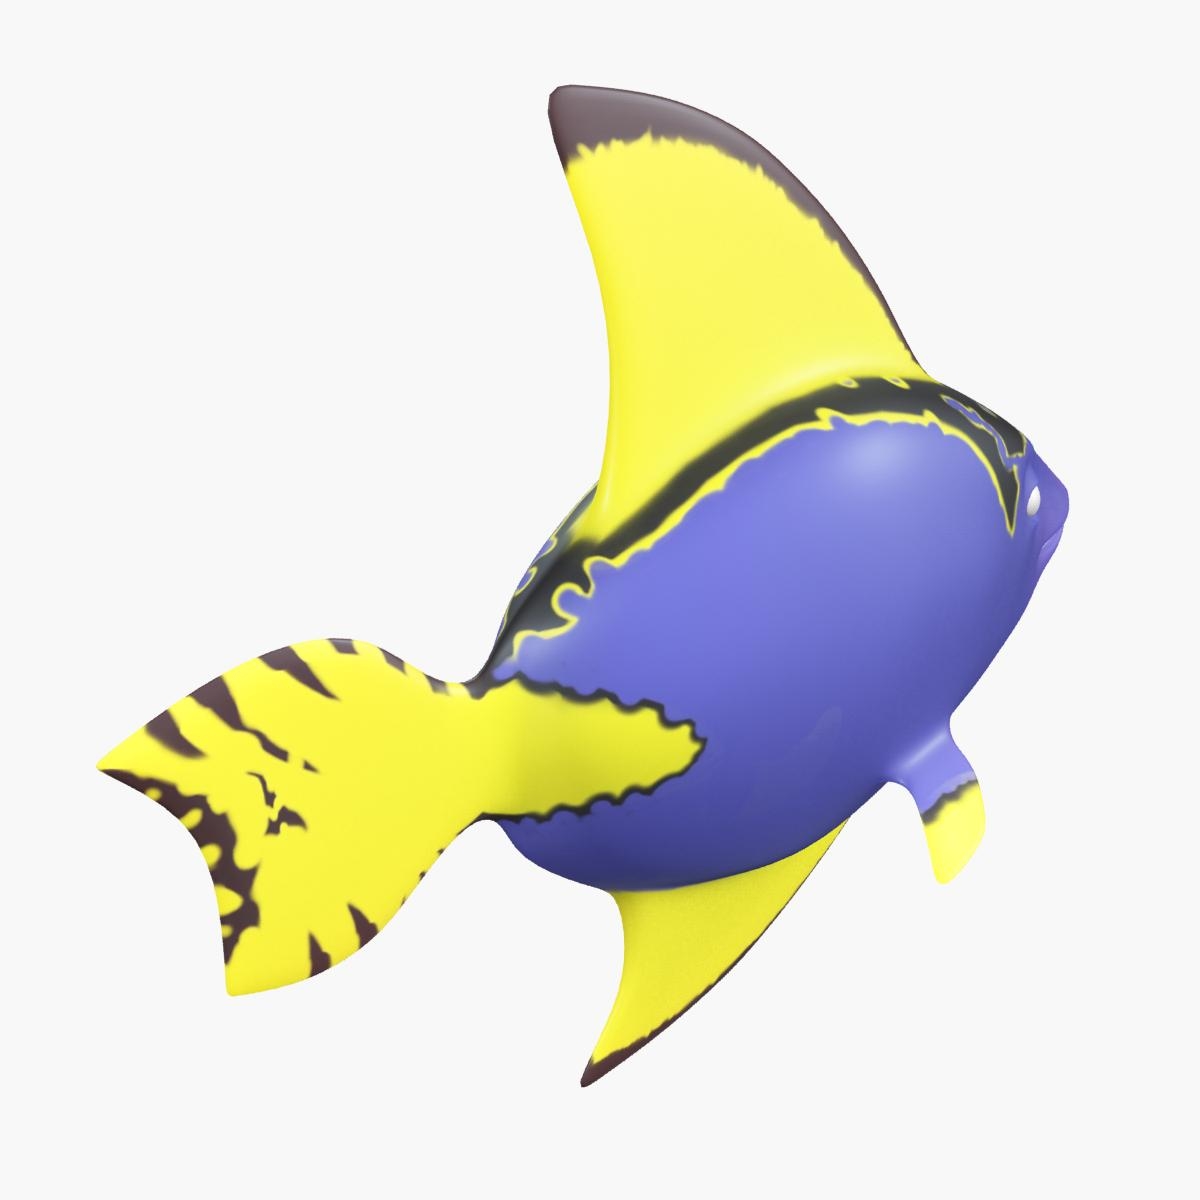 cartoon fish 3d model